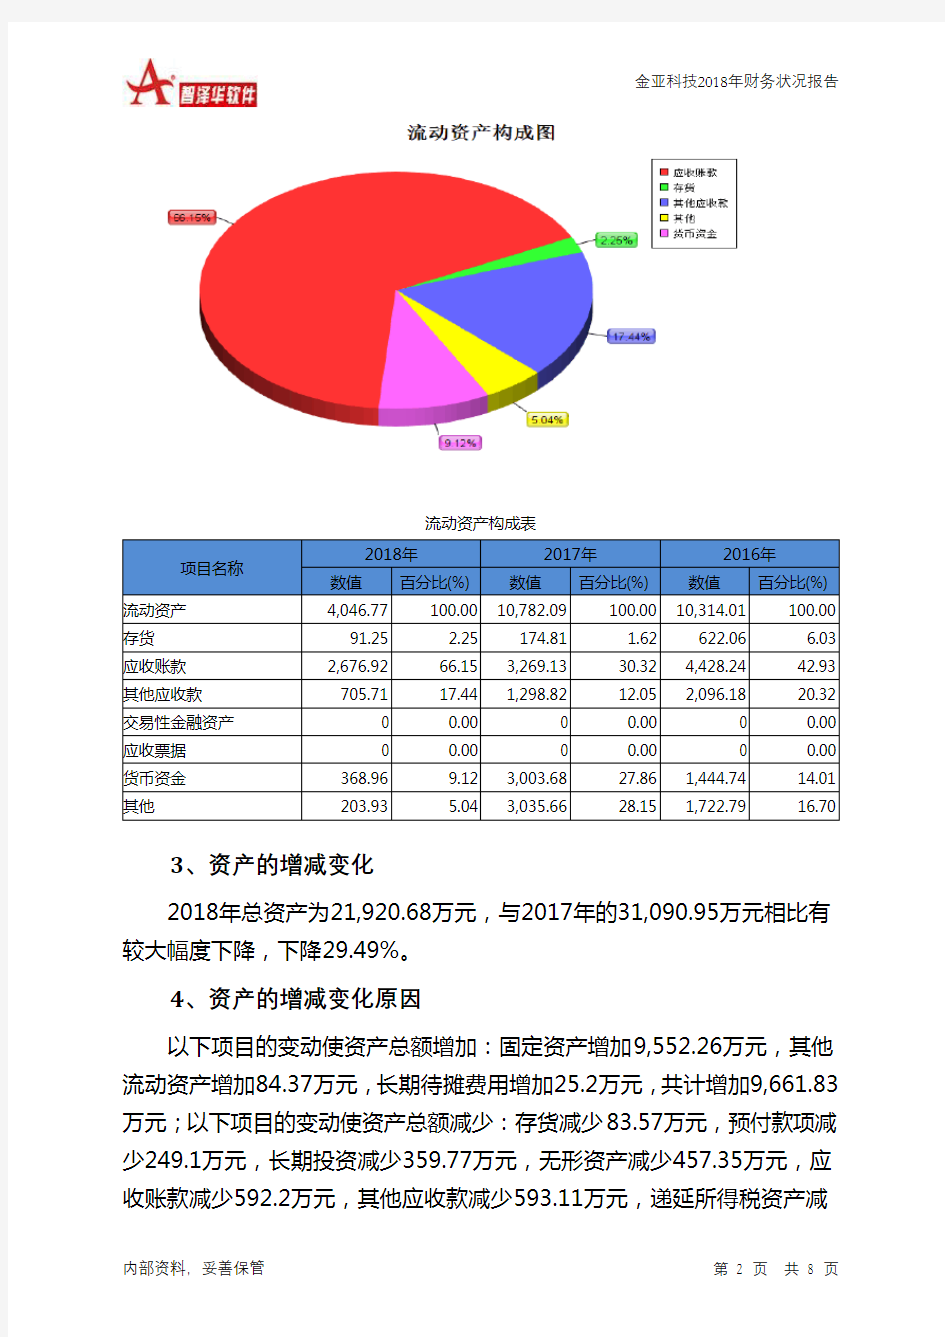 金亚科技2018年财务状况报告-智泽华